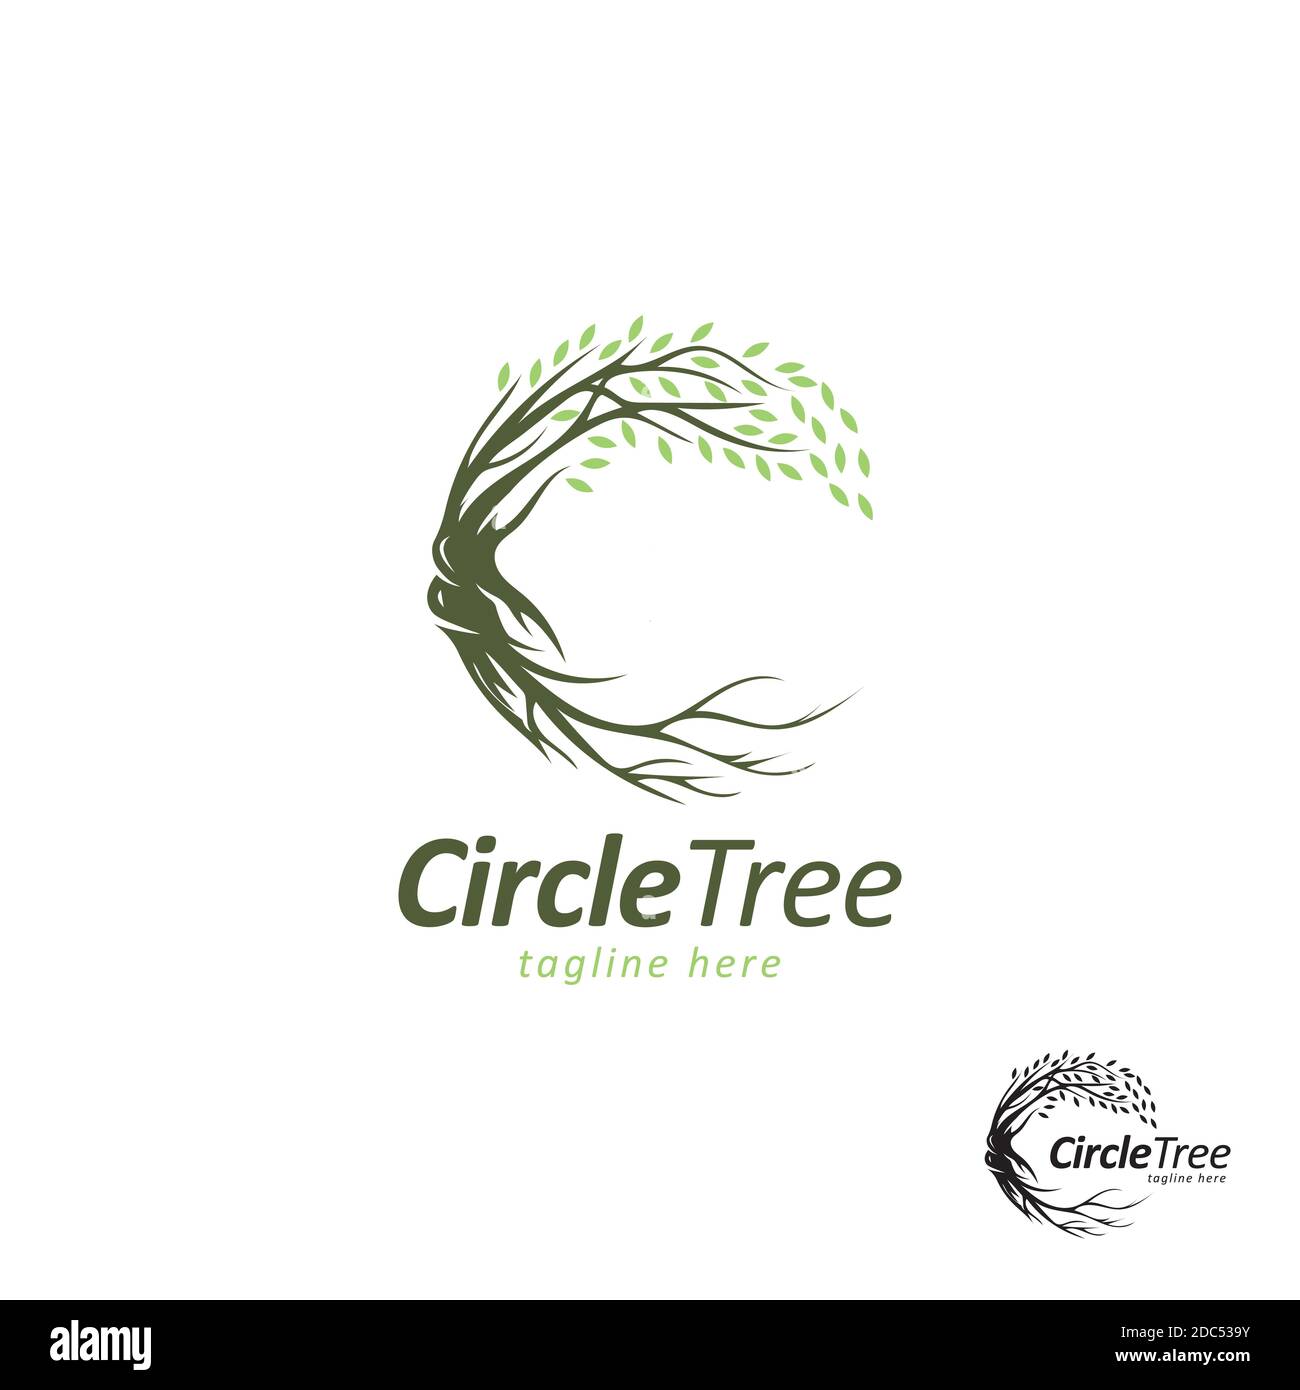 Kreis Baum Symbol Logo Design Vektor Vorlage.Creative Baum mit Zweig Und Roots Stock Vektor